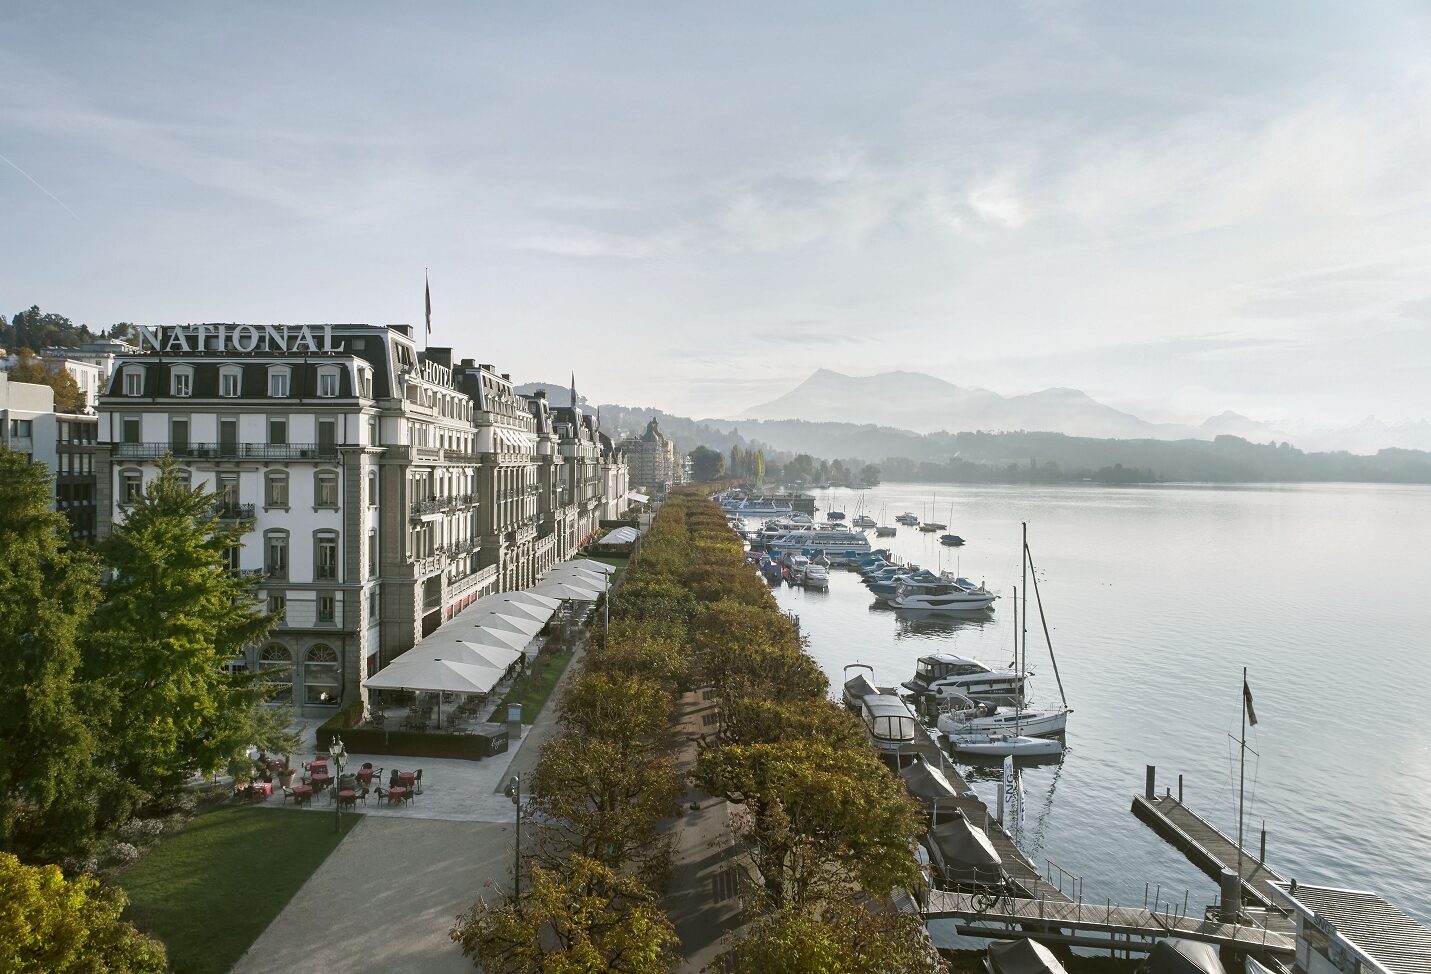 Grand Hotel National Luzern Location für Hochzeiten am See